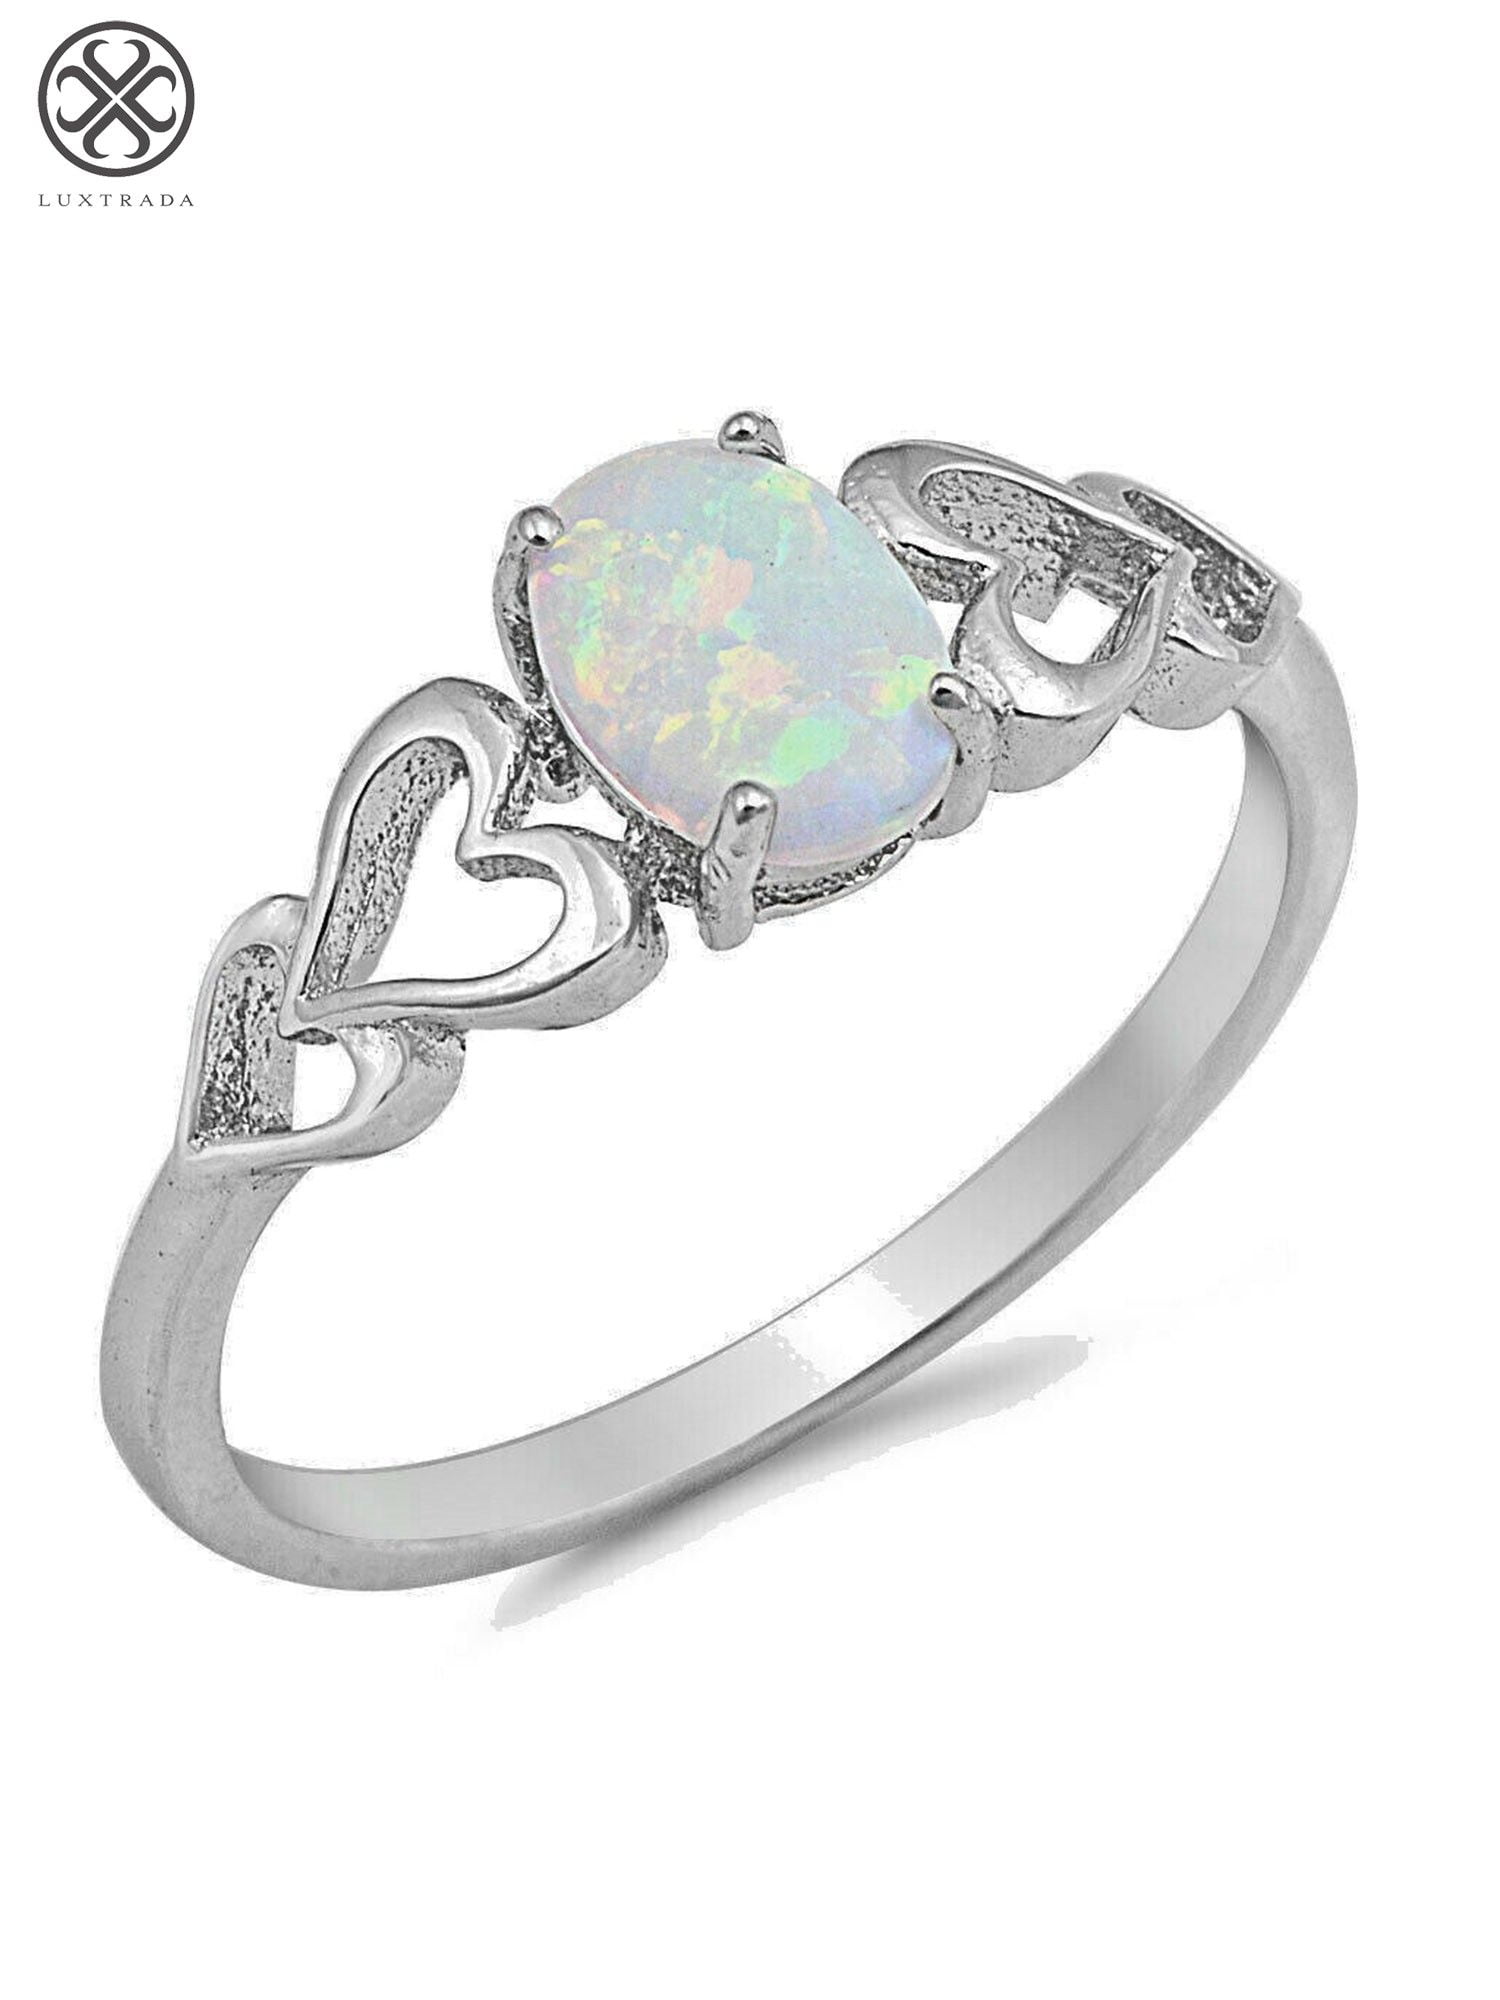 White Fire Opal 925 Sterling Silver Gemstone Women Jewelry Ring Size 6 7 8 9